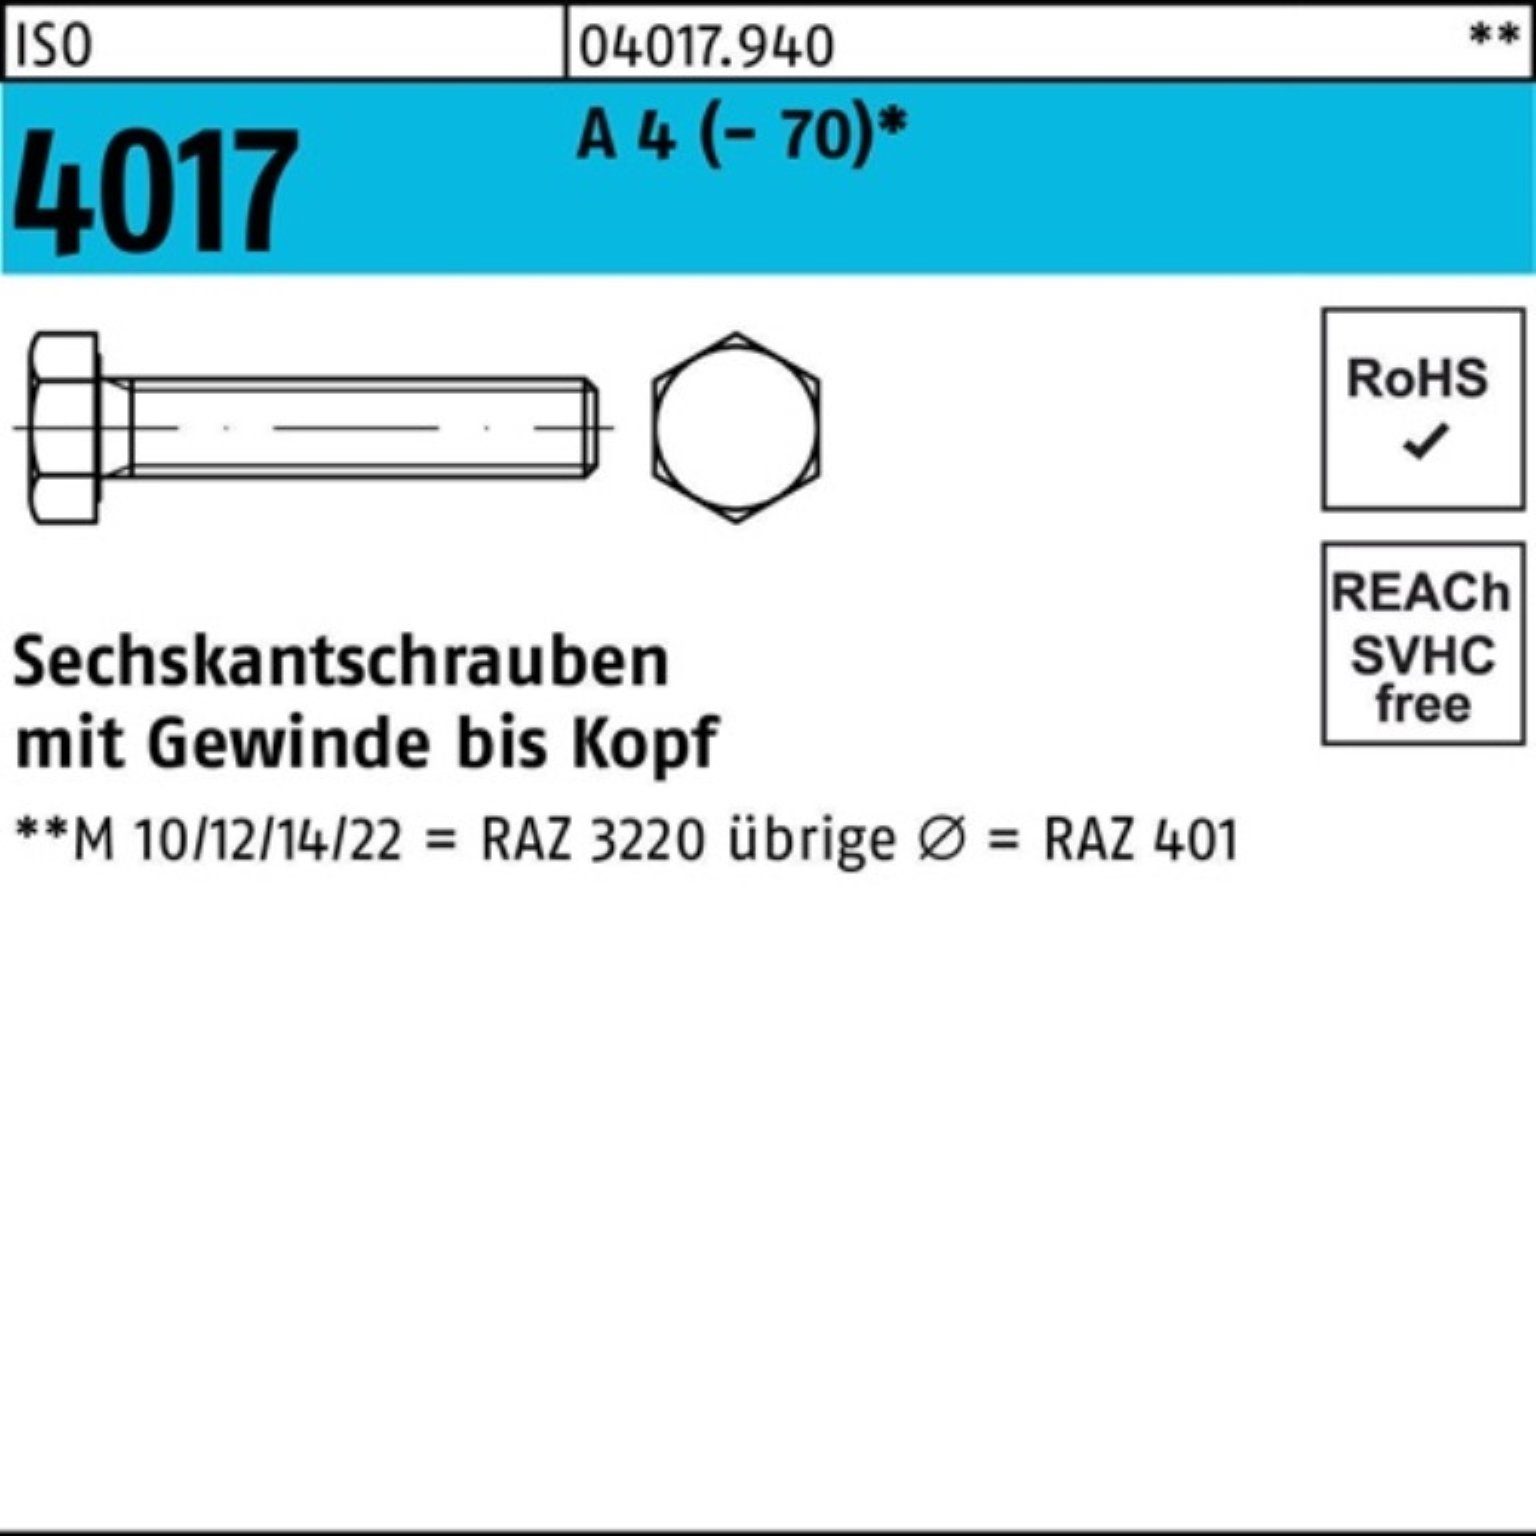 Bufab Sechskantschraube 200er Pack Sechskantschraube ISO 4017 VG M5x 55 A 4 (70) 200 Stück